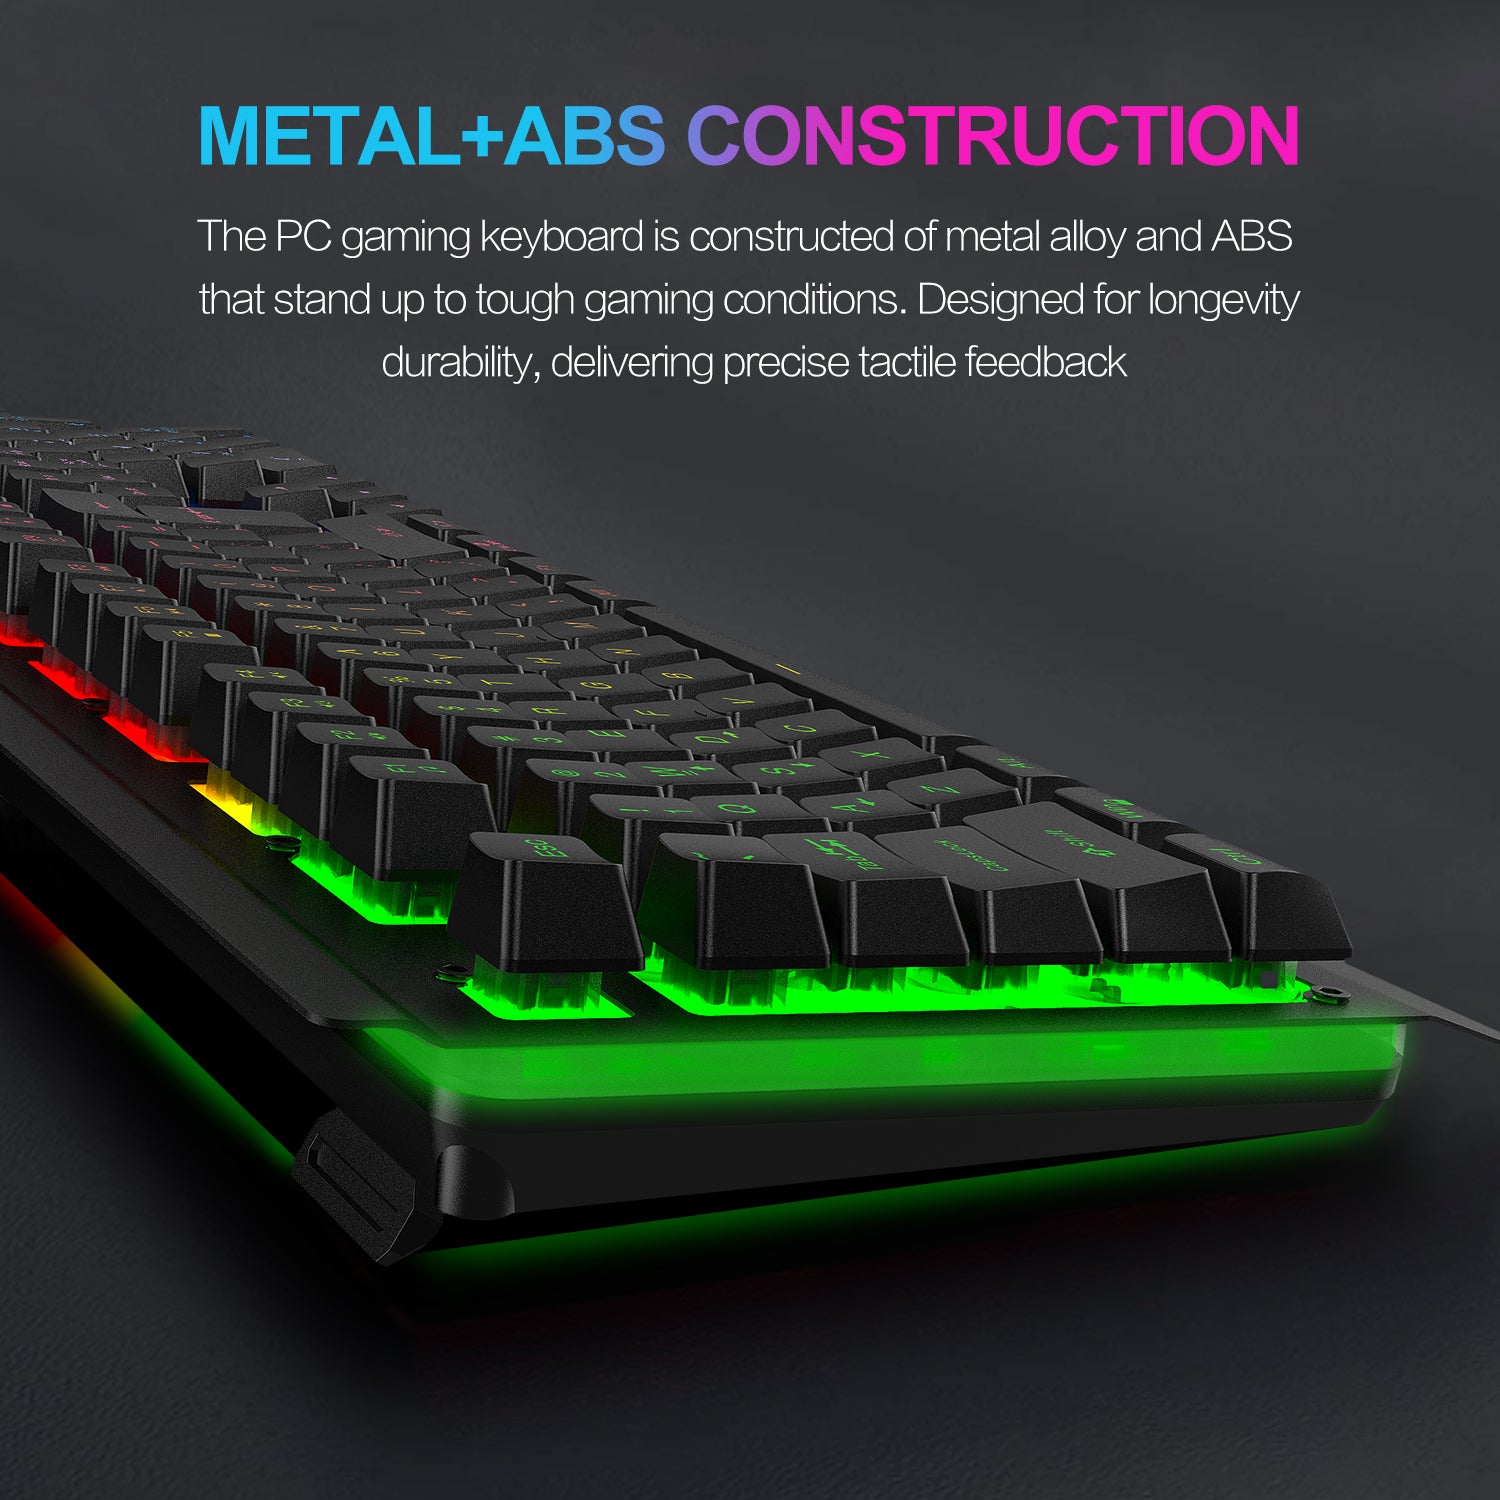 NPET K510 Backlit Gaming Keyboard, Black